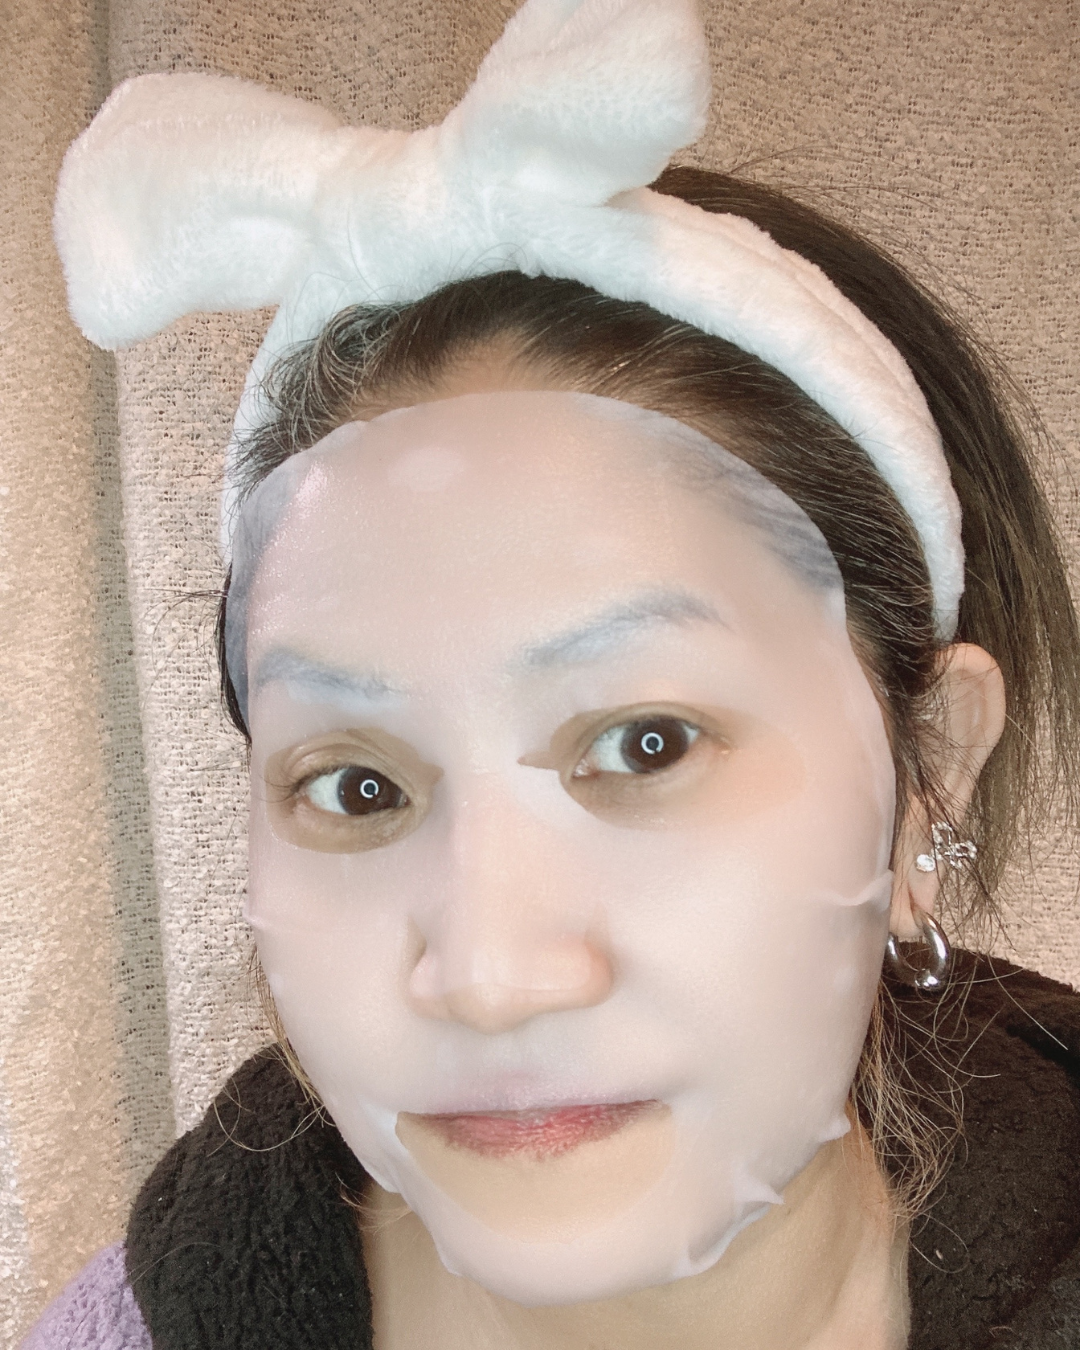 orinダイヤコーポレーションSt-Care Brightening Mask  5EAを使った木戸咲夜さんのクチコミ画像4